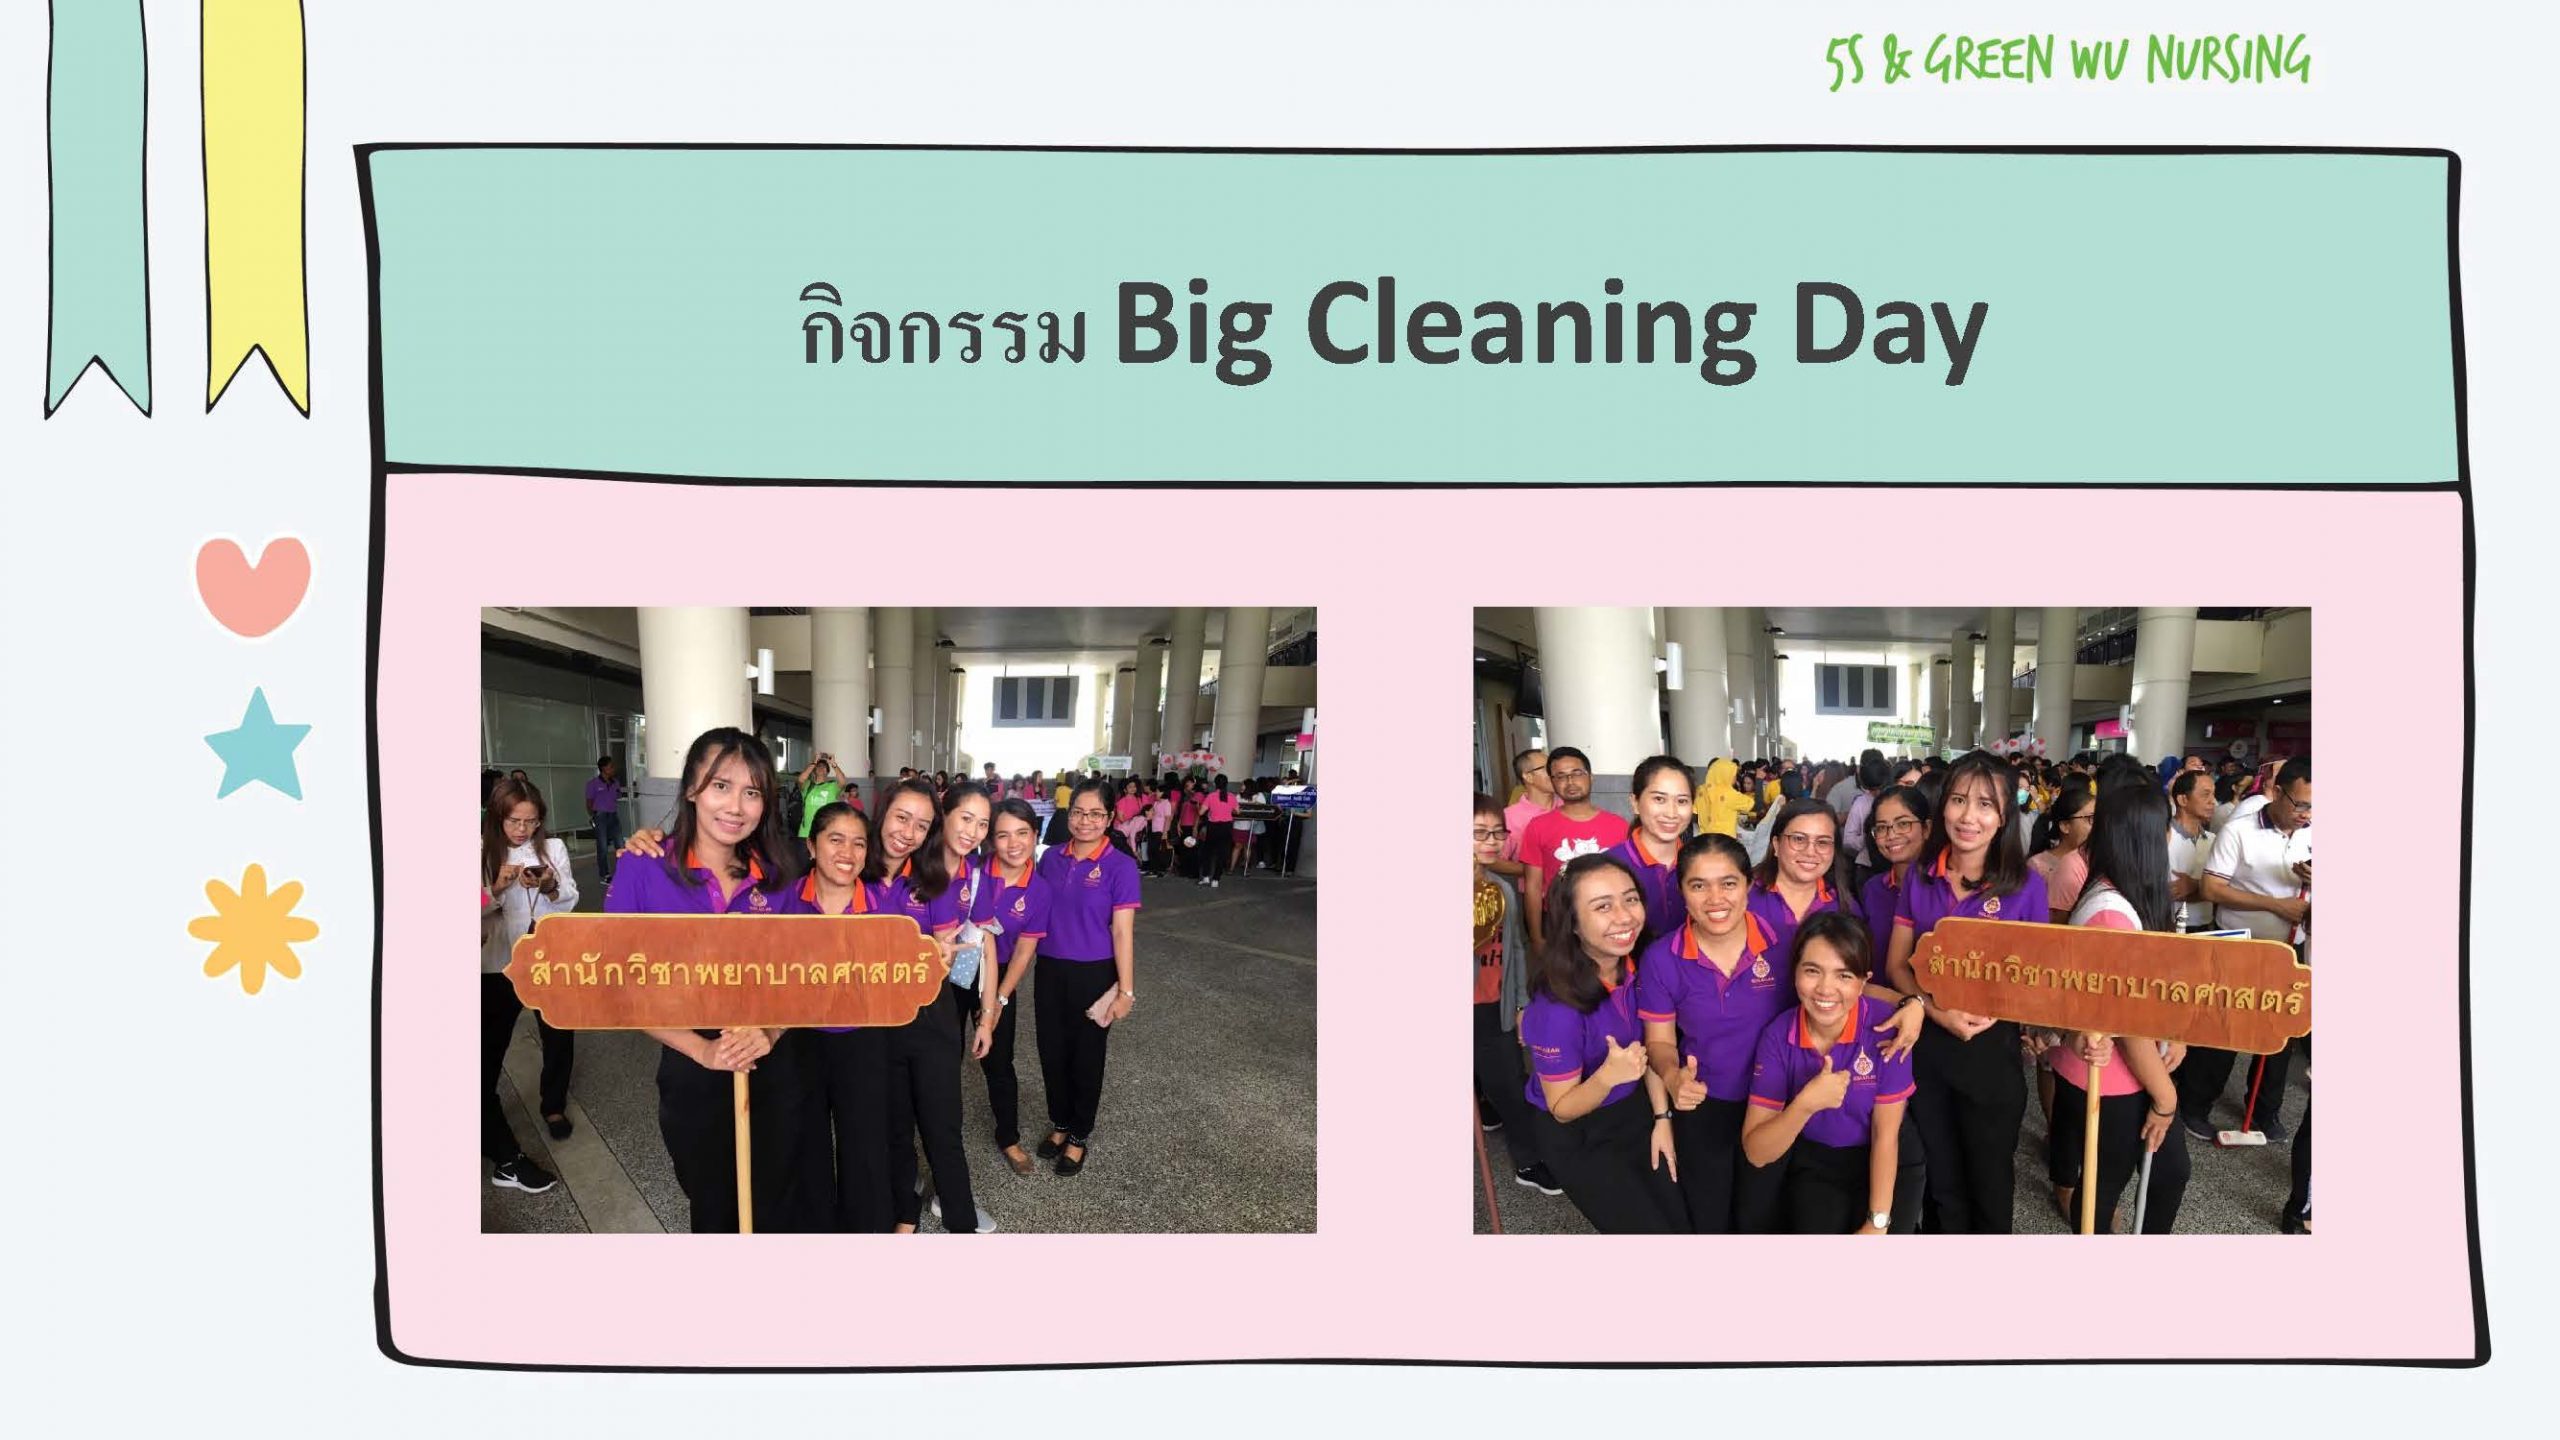 กิจกรรม Big Cleaning Day 5 ส. Green มหาวิทยาลัยวลัยลักษณ์